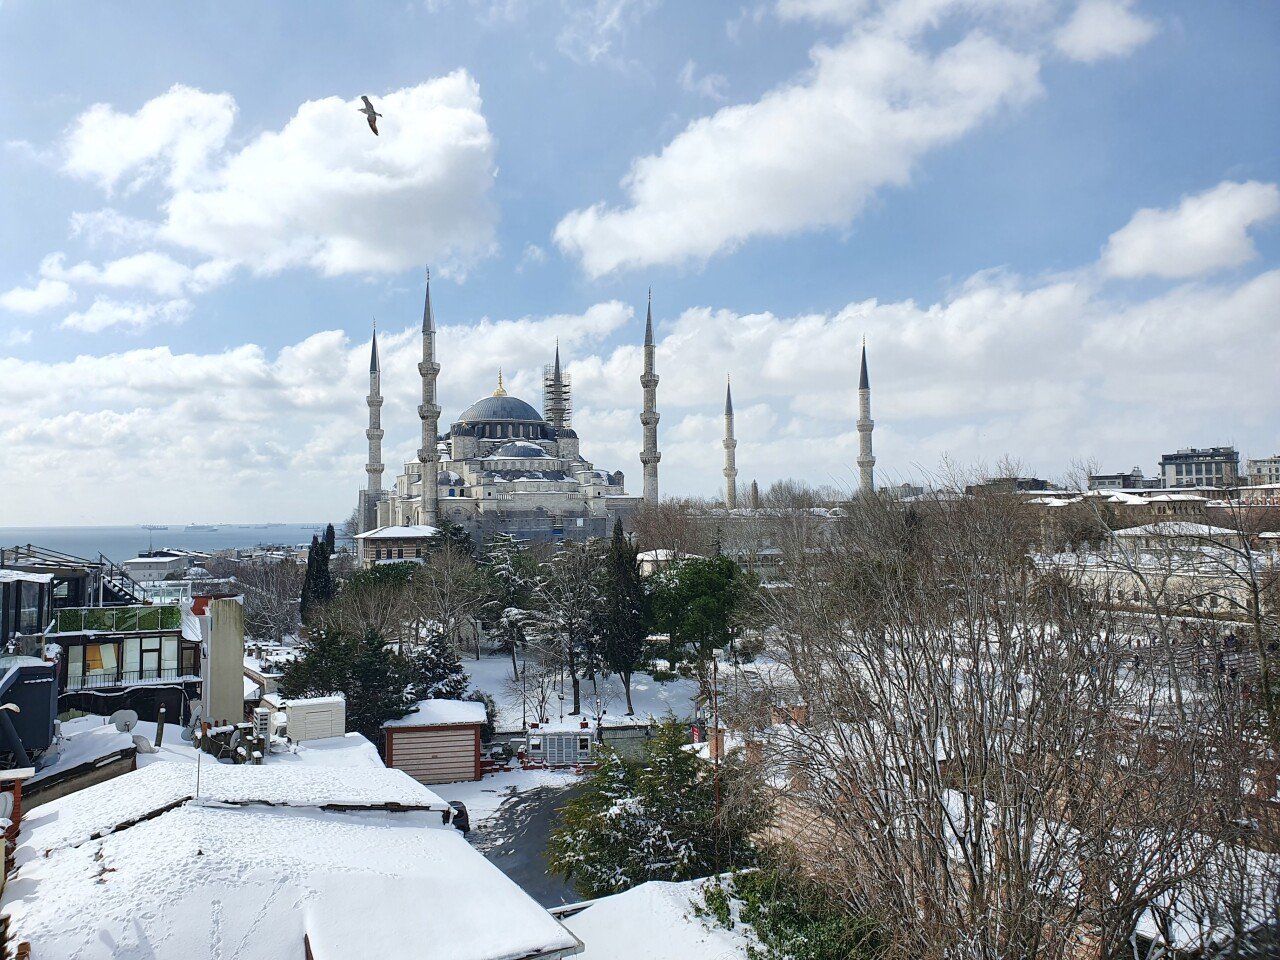 20220311_131943(0).jpg 터키 이스탄불 3월인데 눈 엄청 많이 왔네요 ㅎㅎ